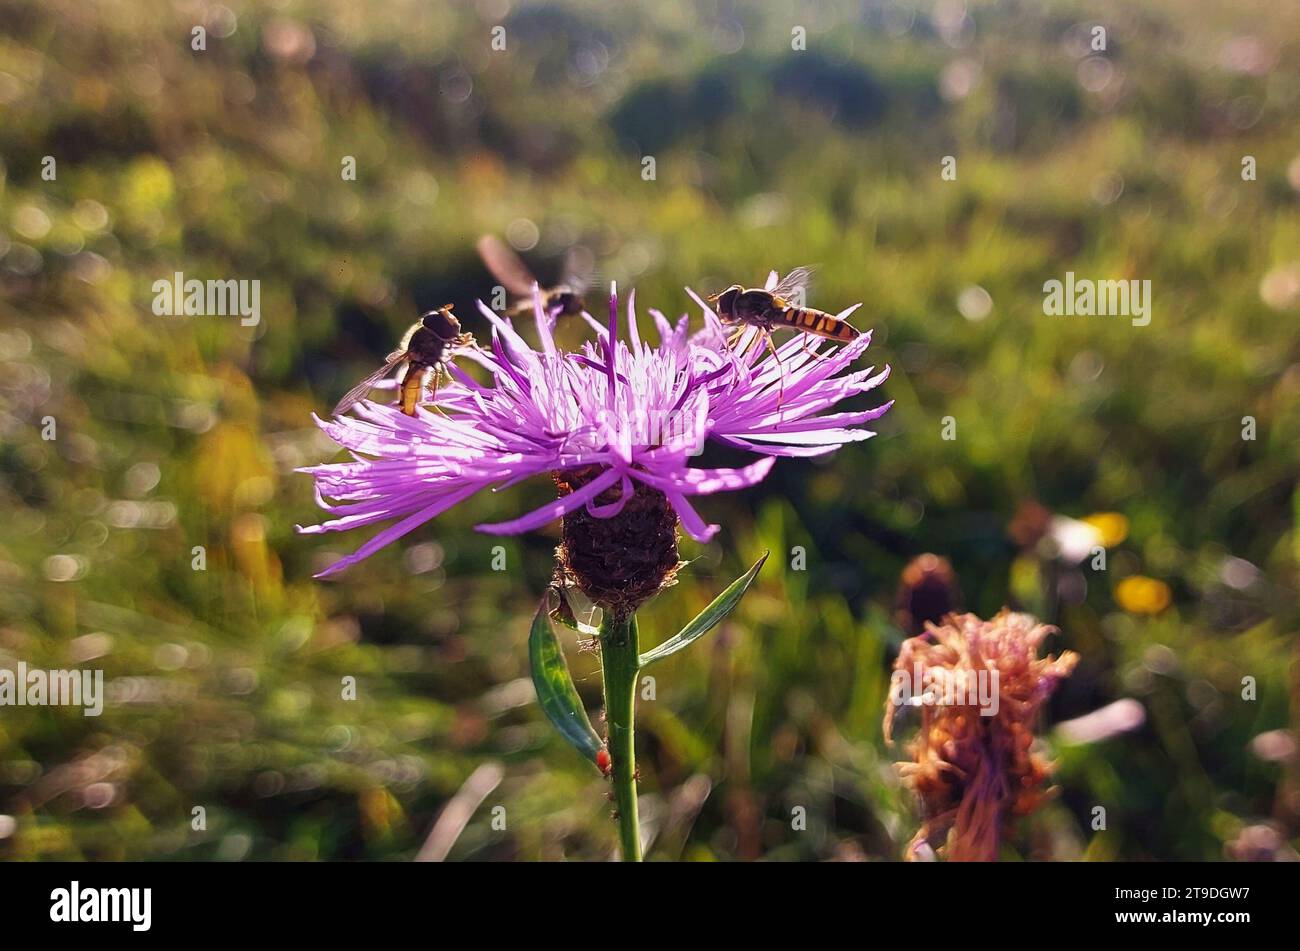 Une image en gros plan d'un certain nombre d'abeilles perchées sur les pétales d'une belle fleur, entourées d'herbe verte luxuriante Banque D'Images